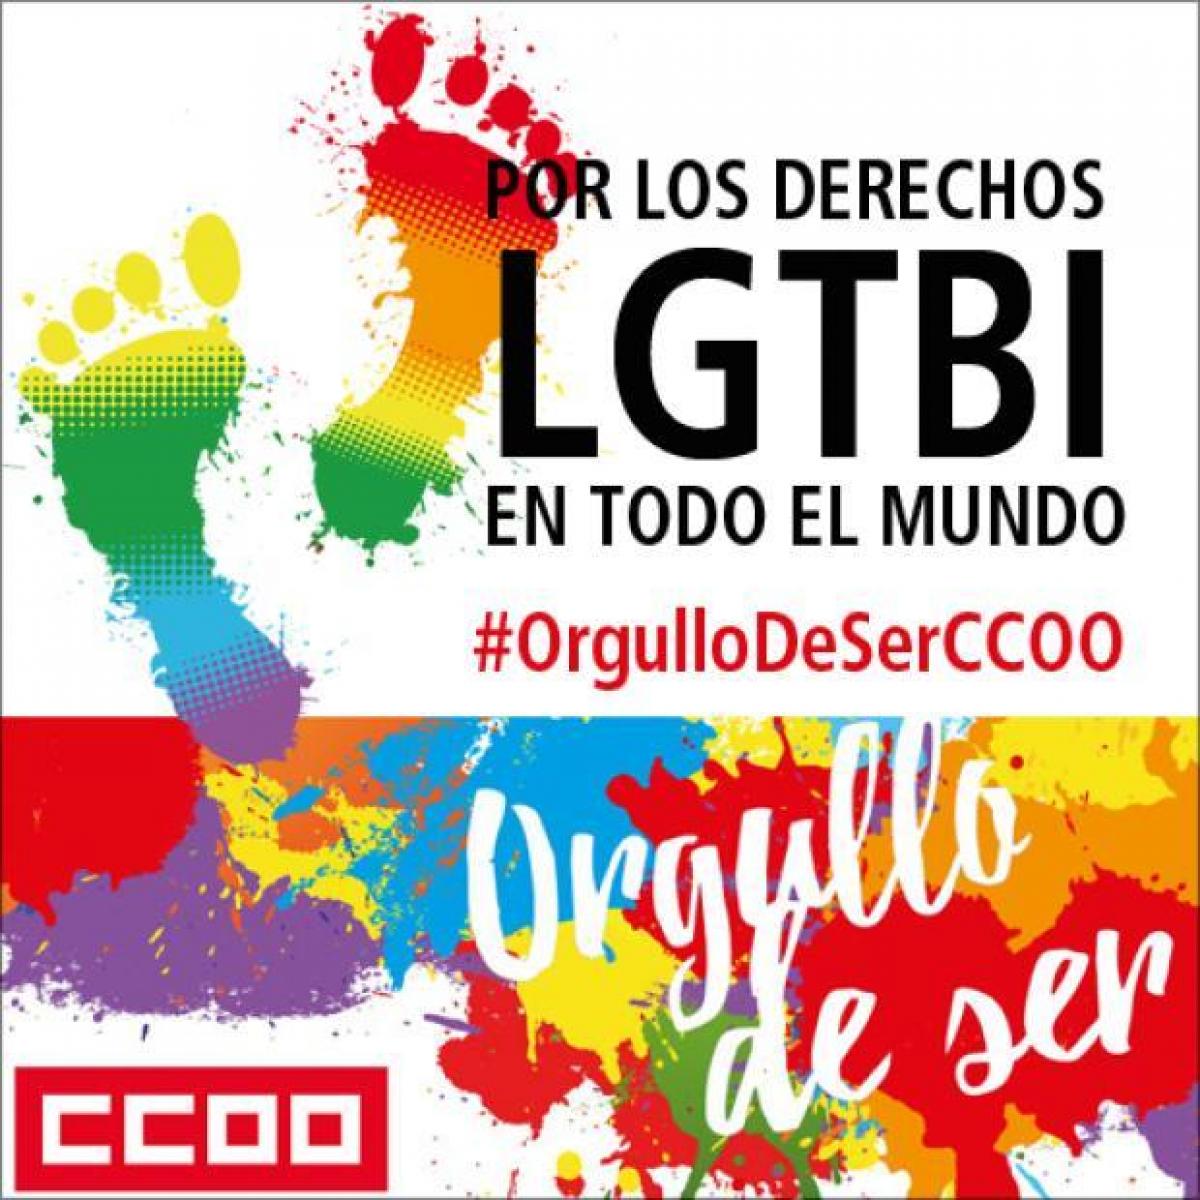 CCOO-ORGULLO